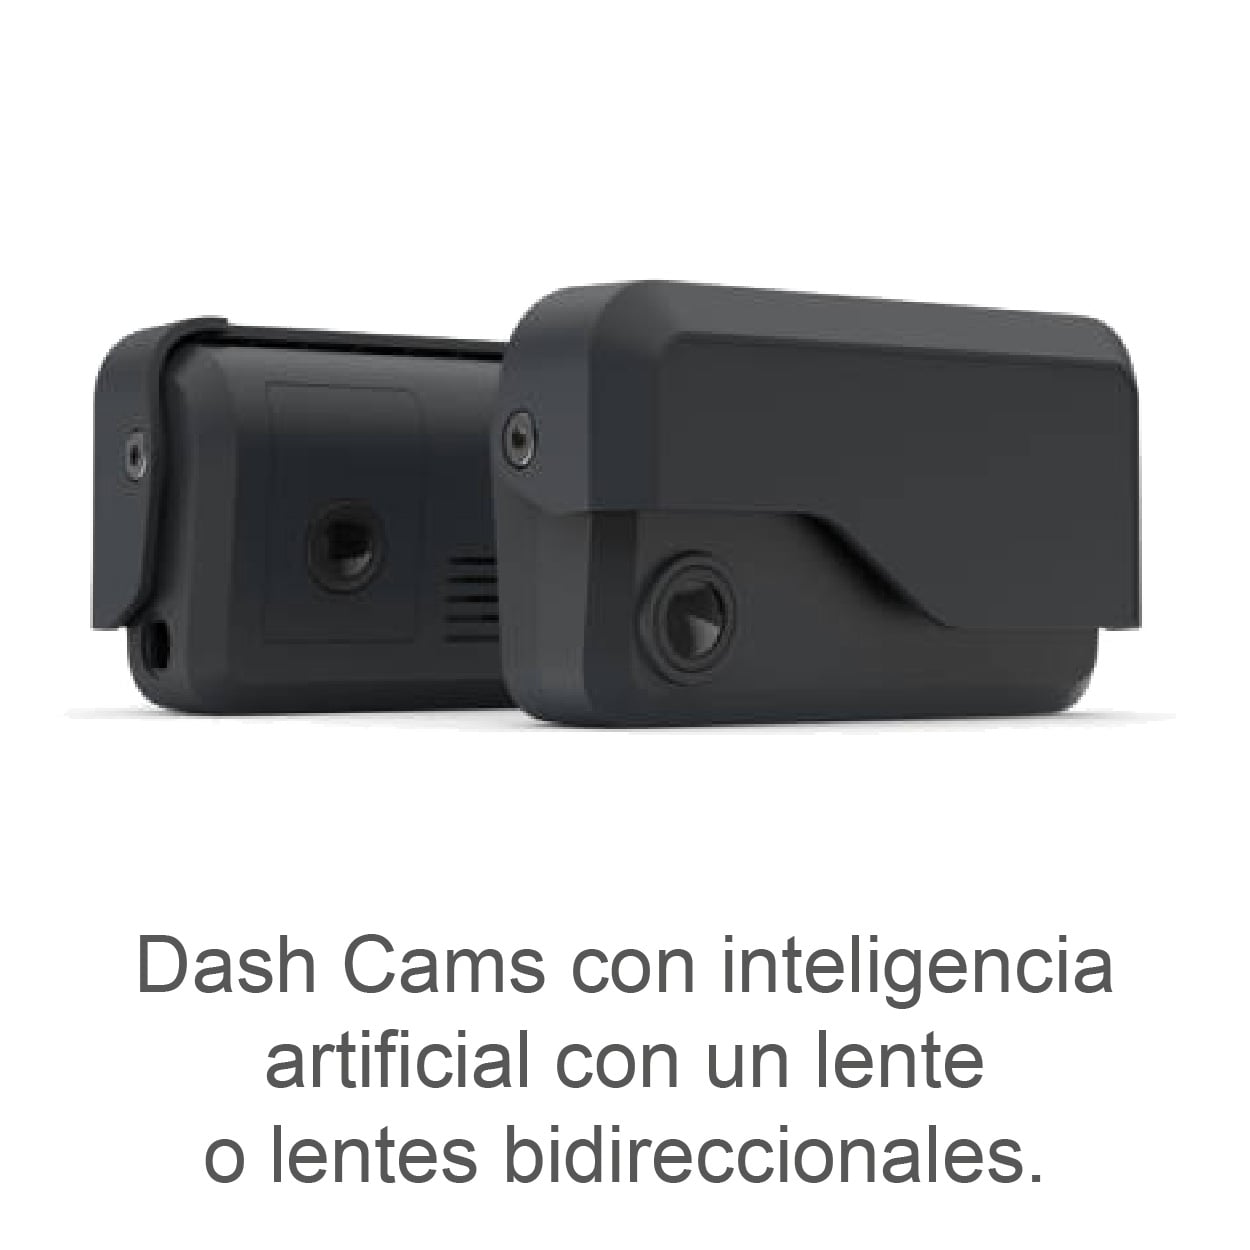 Dash cams